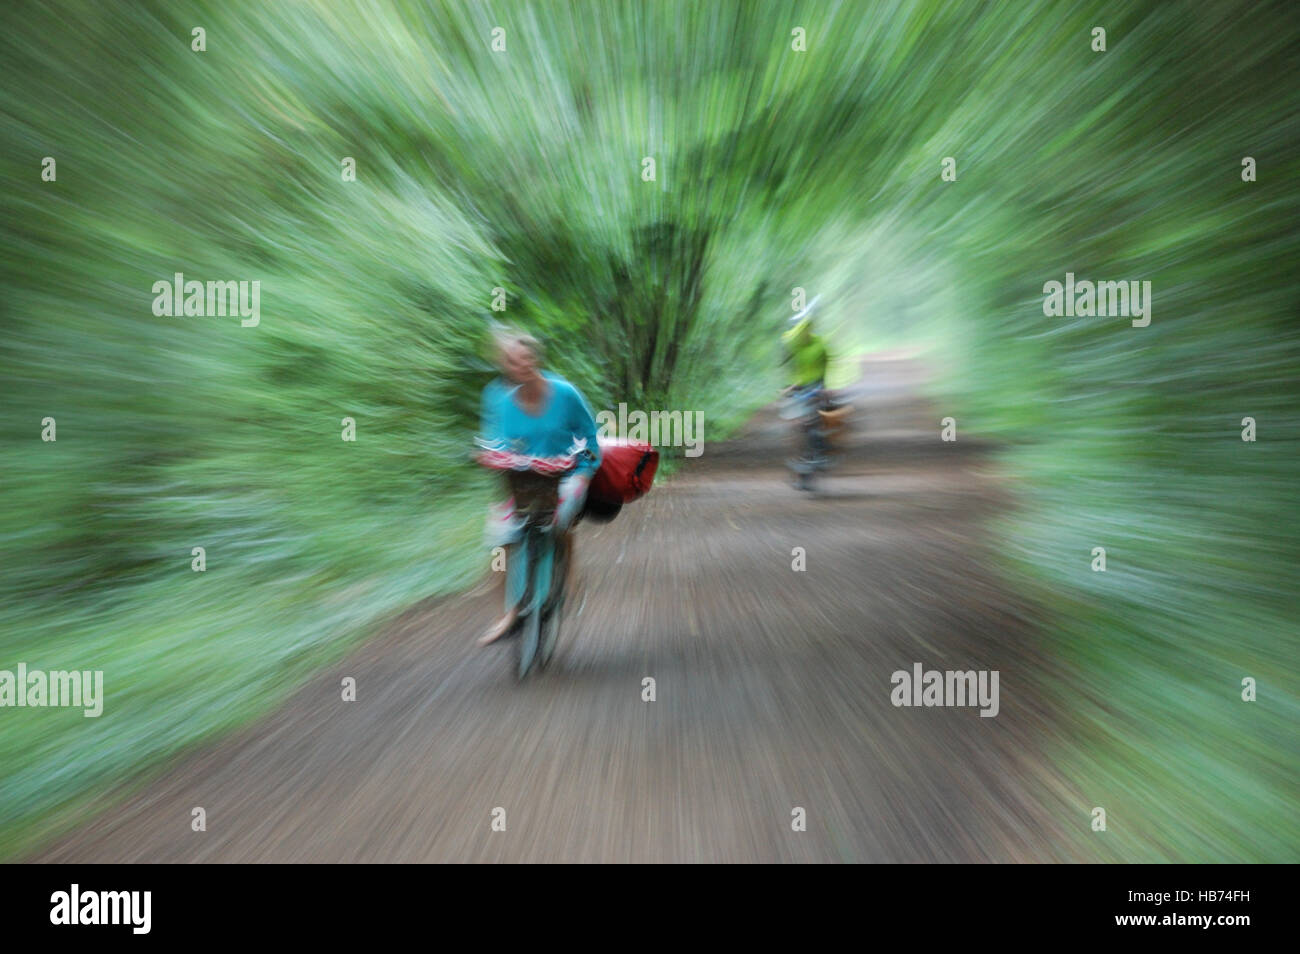 Zwei Radfahrer ein Mann und eine Frau auf einem Radweg genommen mit einer langen Belichtungszeit während zoomen, den Eindruck von Geschwindigkeit zu geben. Stockfoto